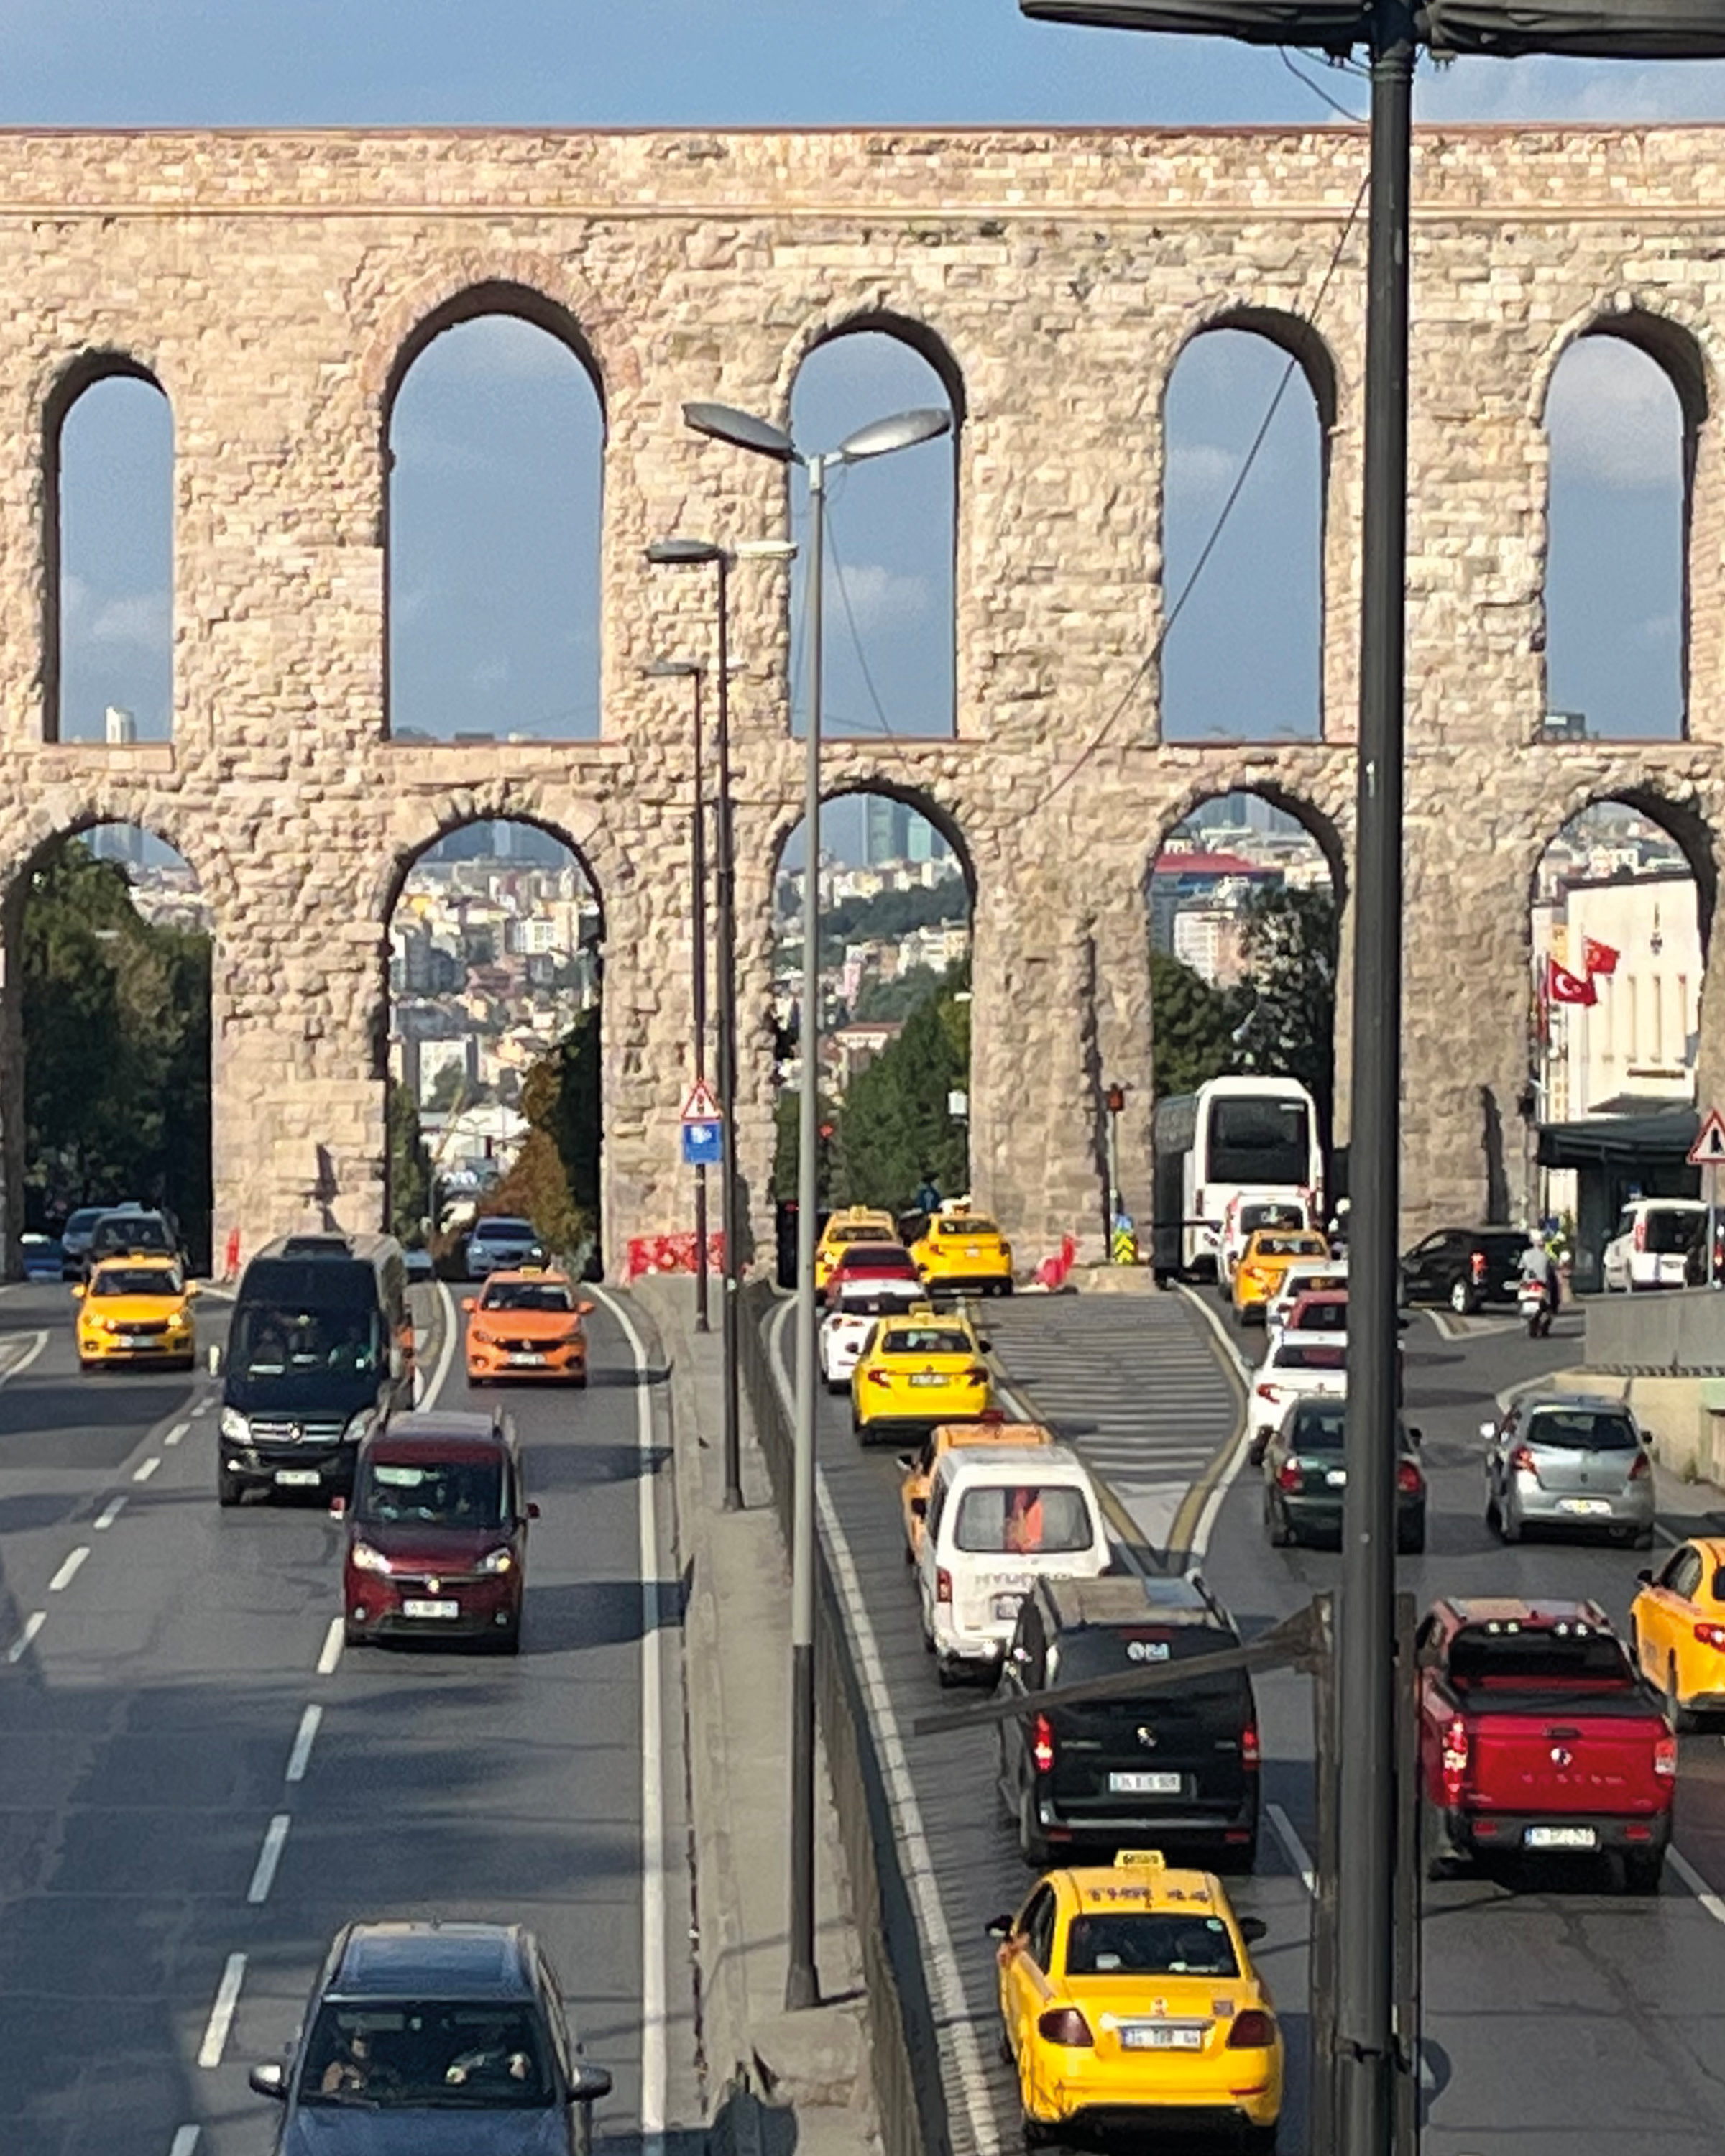 aquaduct in istanbul